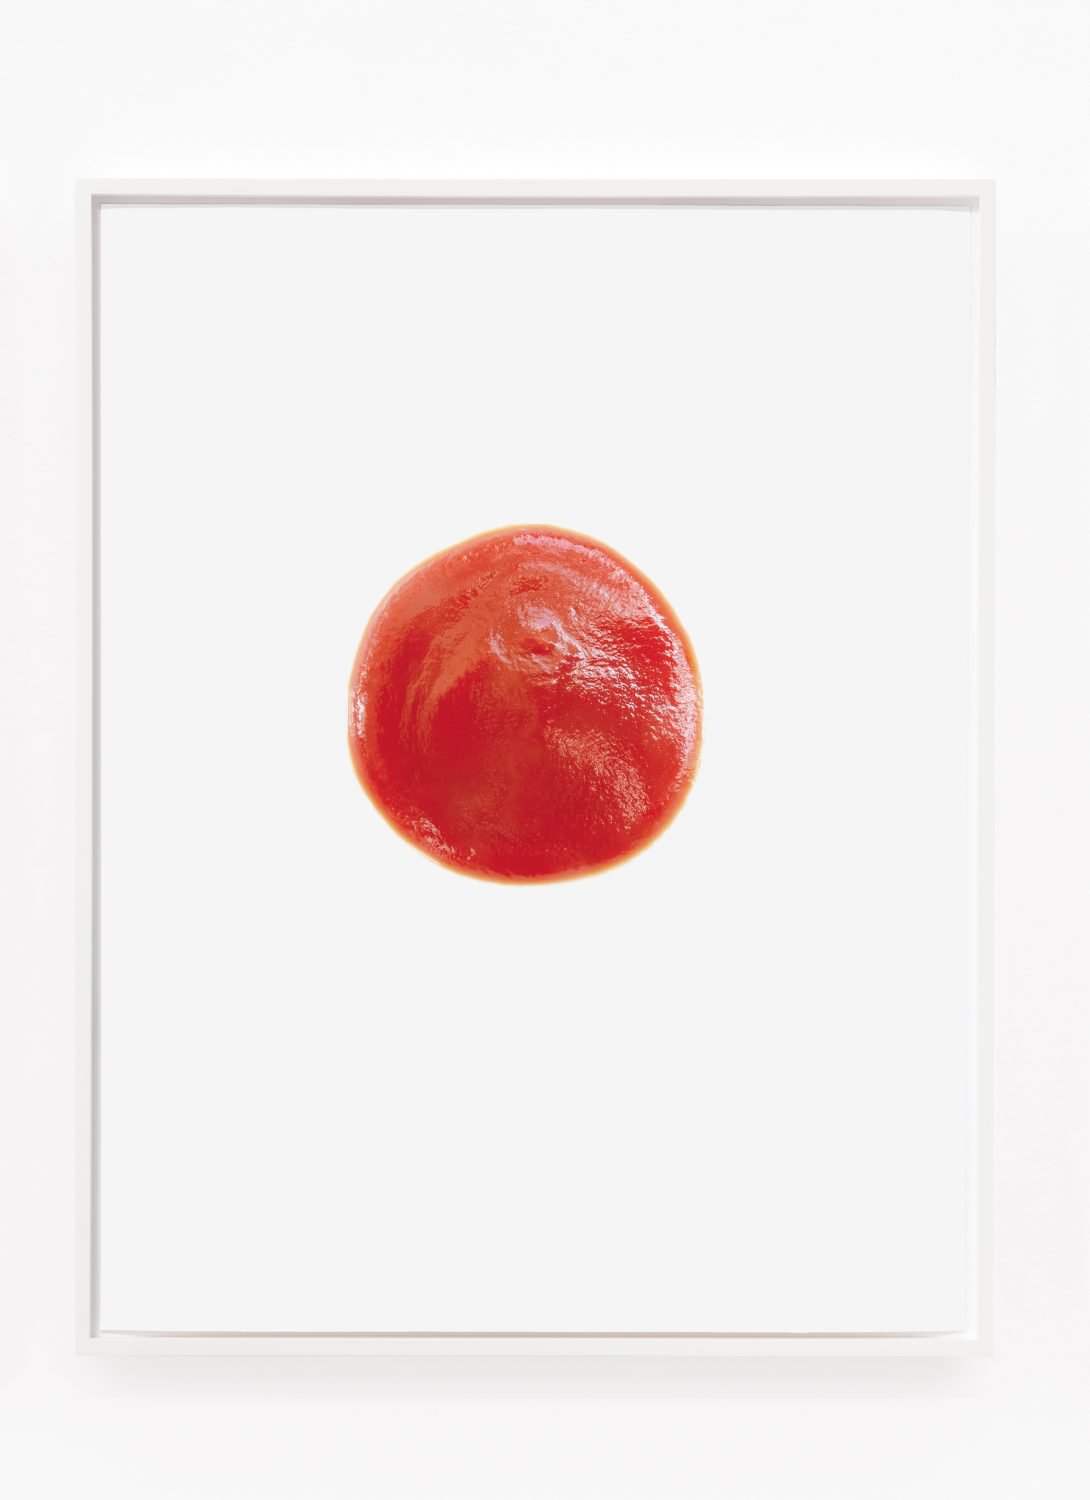 Lisa HolzerIch bin nicht da, 2011Pigment print on cotton paper52.5 x 70 cm